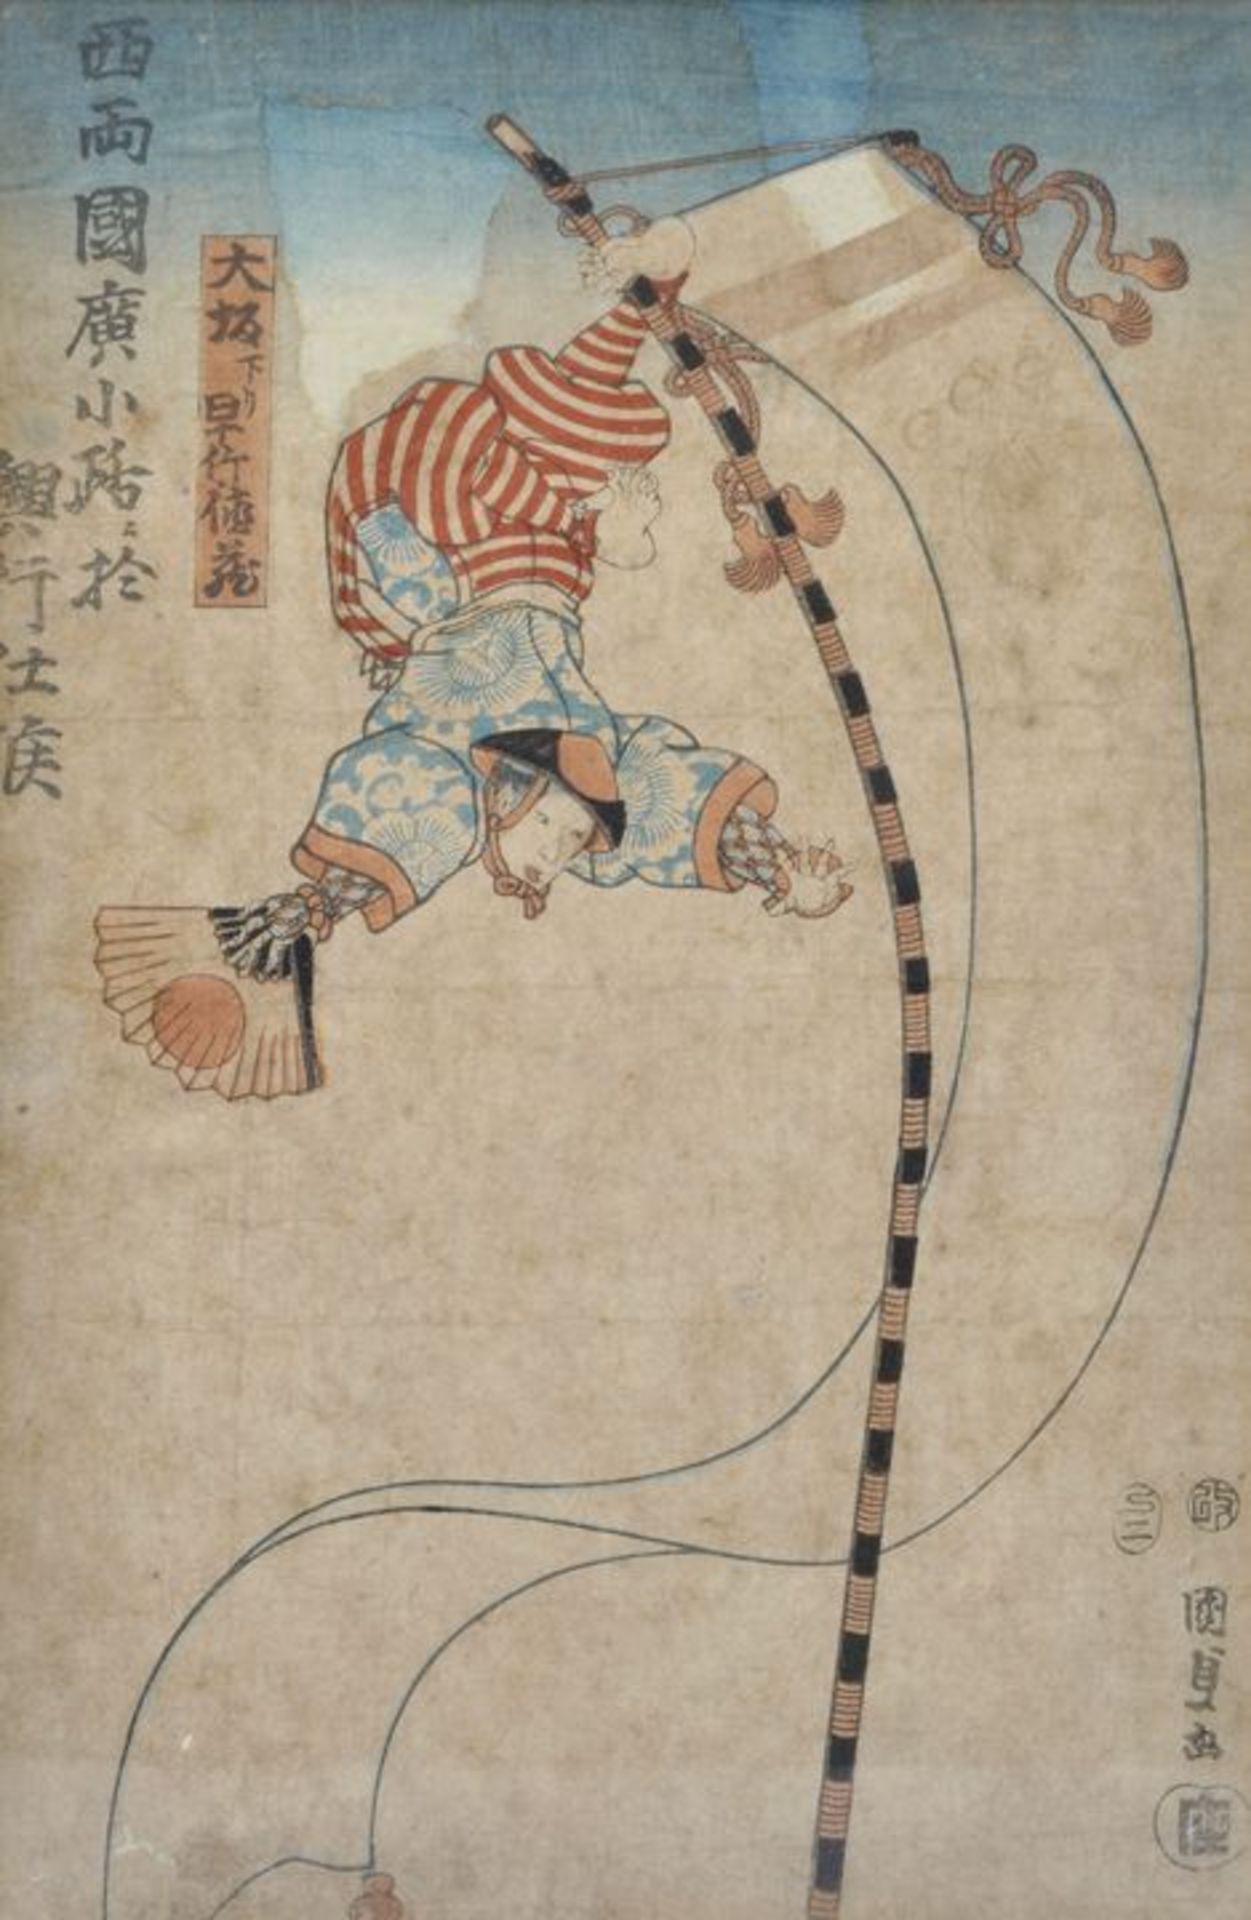 Kunisada (? 1786-1864)